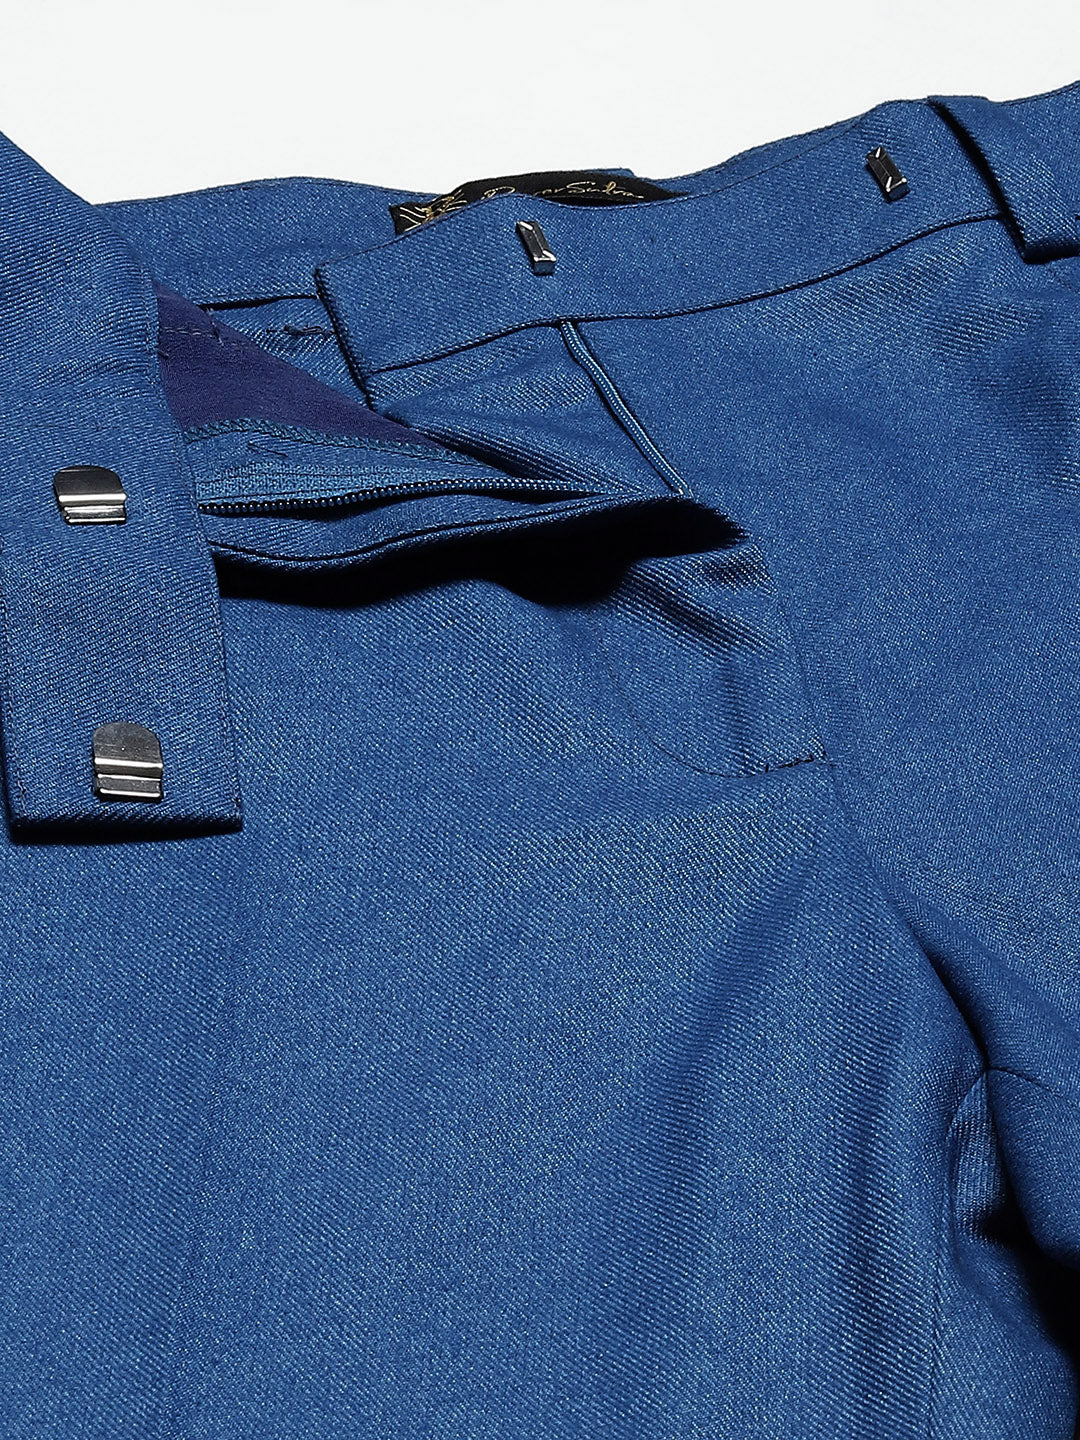 Warm Tweed Pantsuit - Teal Blue